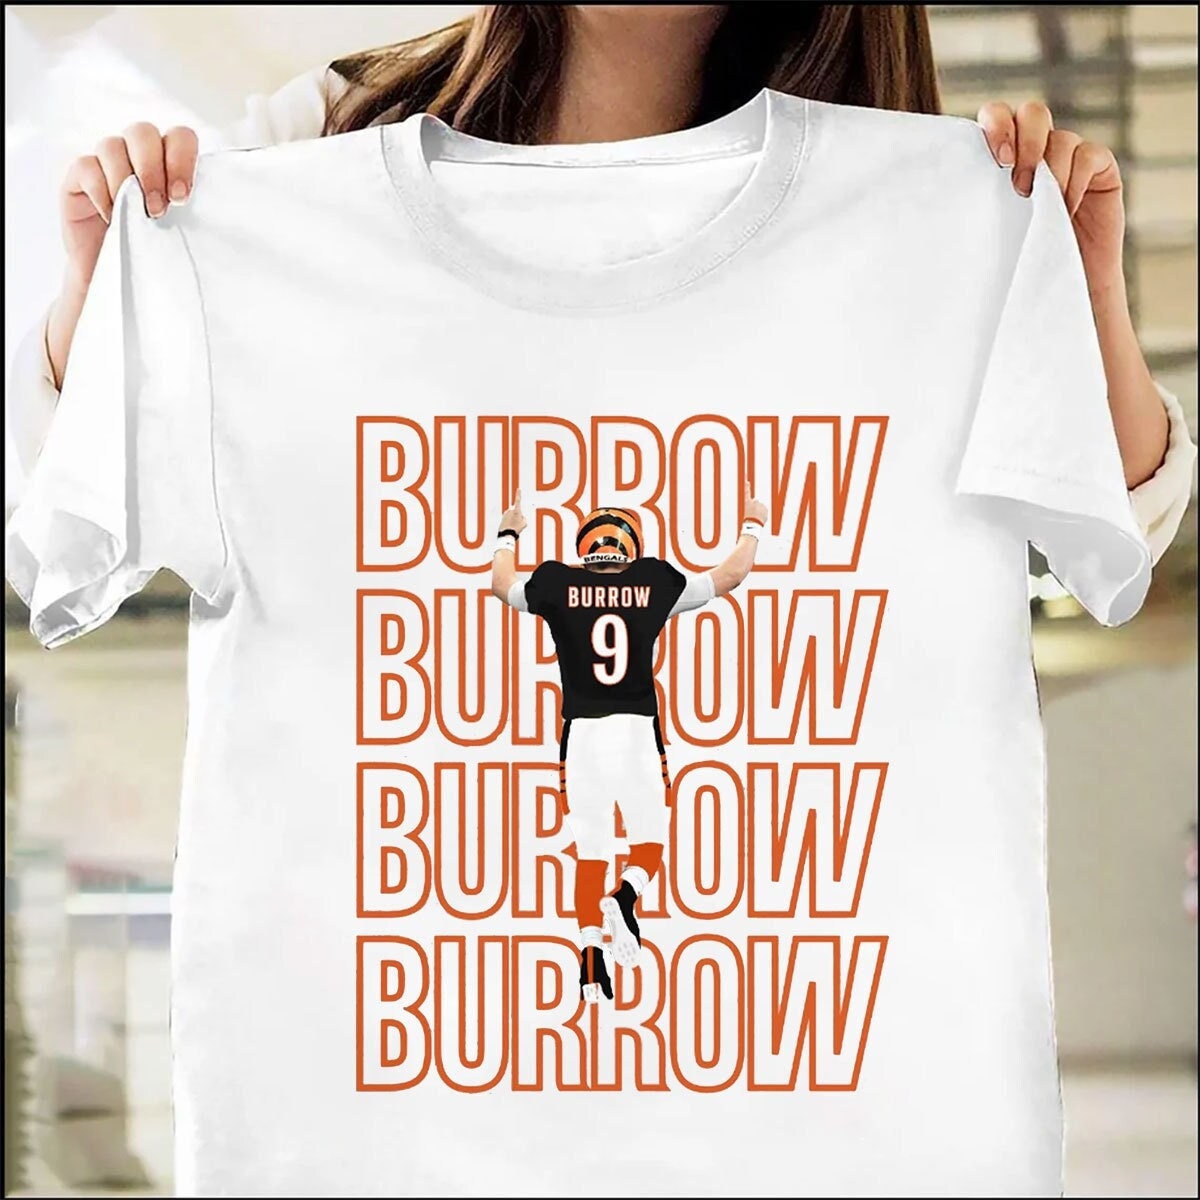 Discover Joe Burrow Shirt, Joe Brr, Joe Shiesty T-Shirt